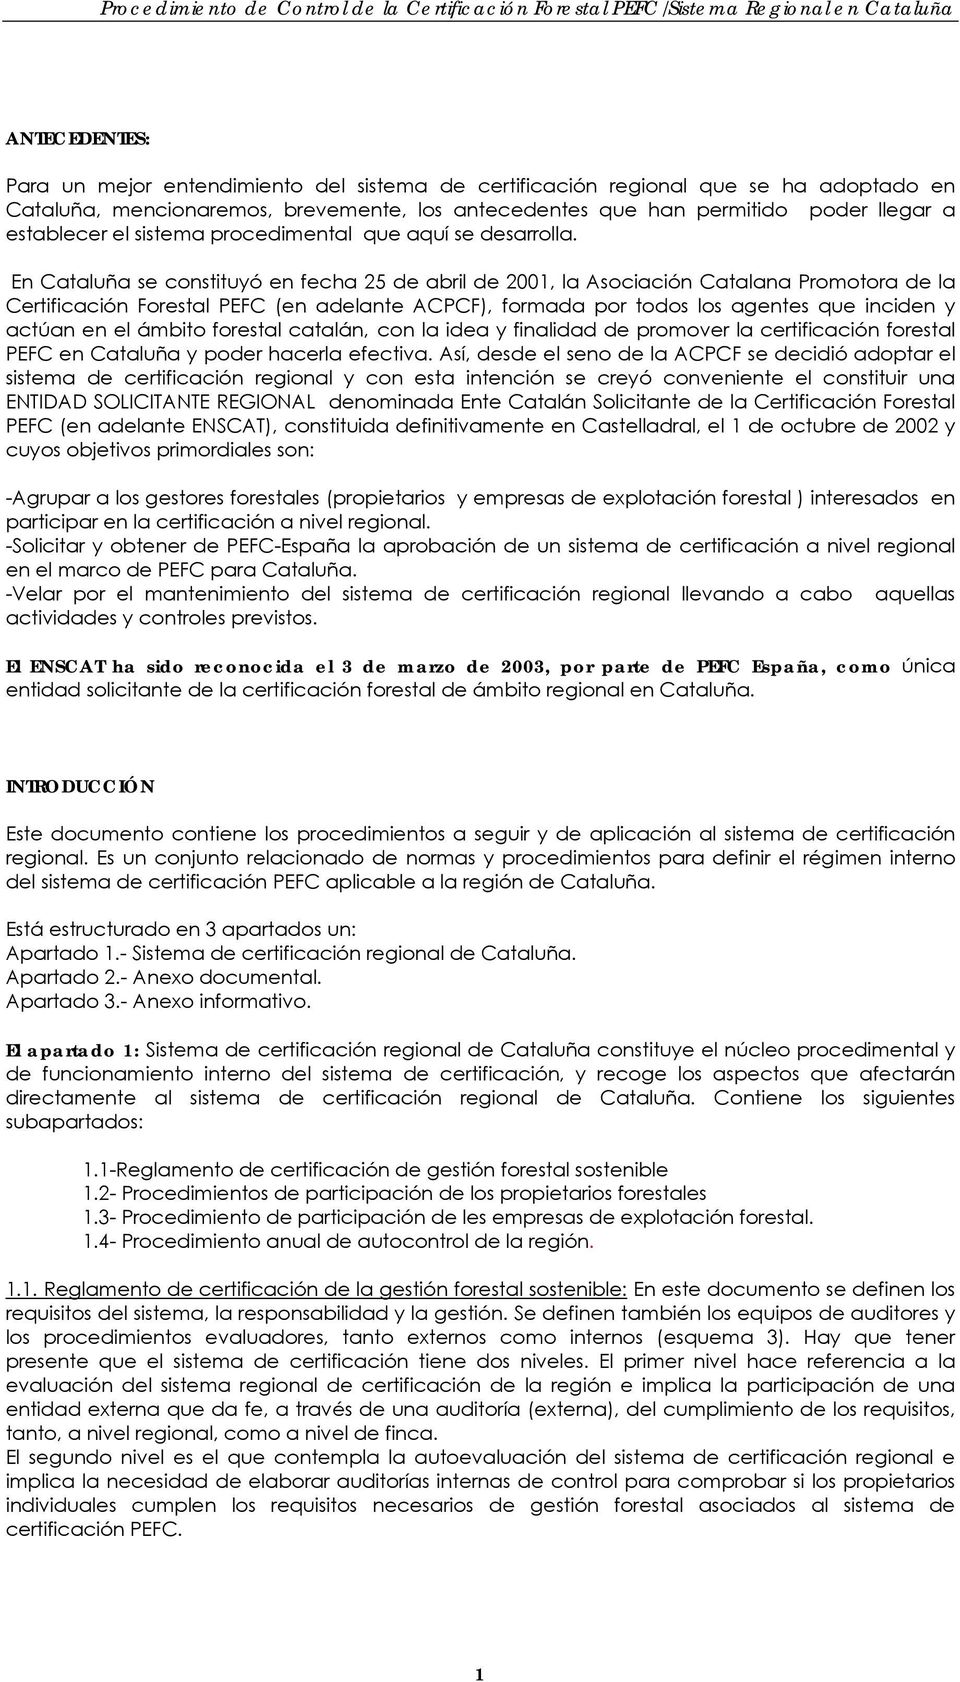 En Cataluña se constituyó en fecha 25 de abril de 2001, la Asociación Catalana Promotora de la Certificación Forestal PEFC (en adelante ACPCF), formada por todos los agentes que inciden y actúan en